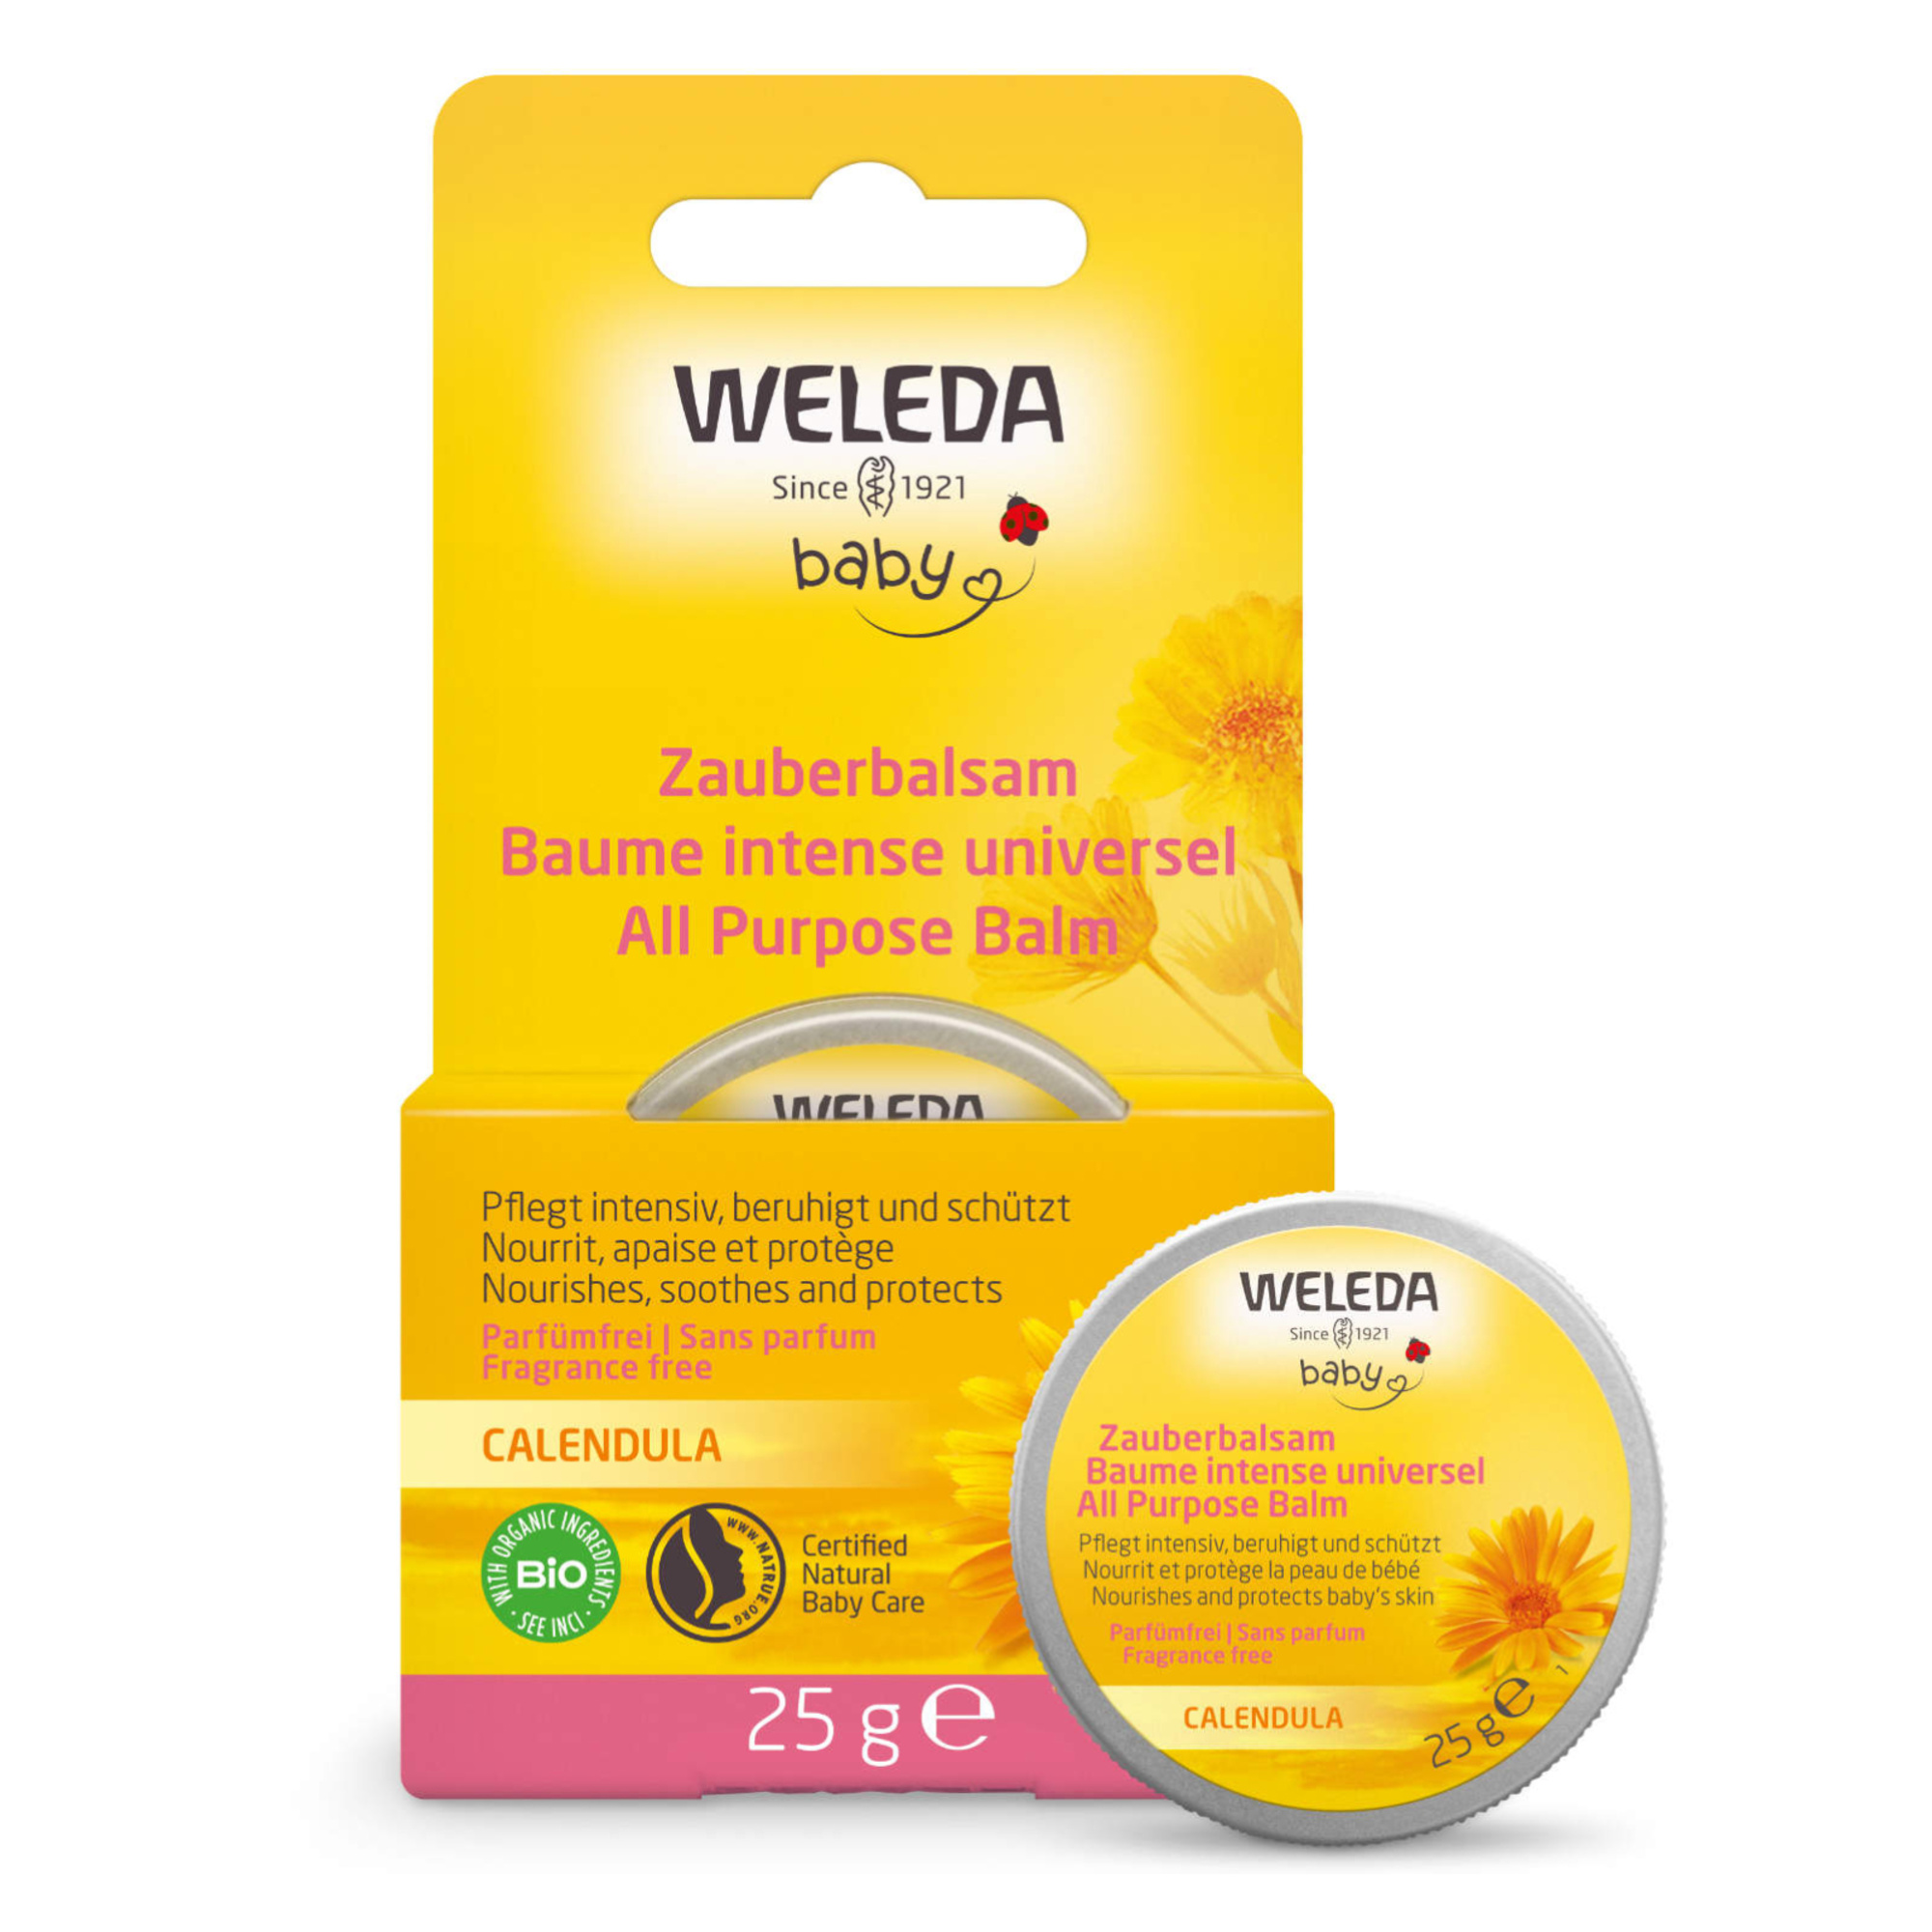 Baby balsamo multiuso calendula weleda - Weleda